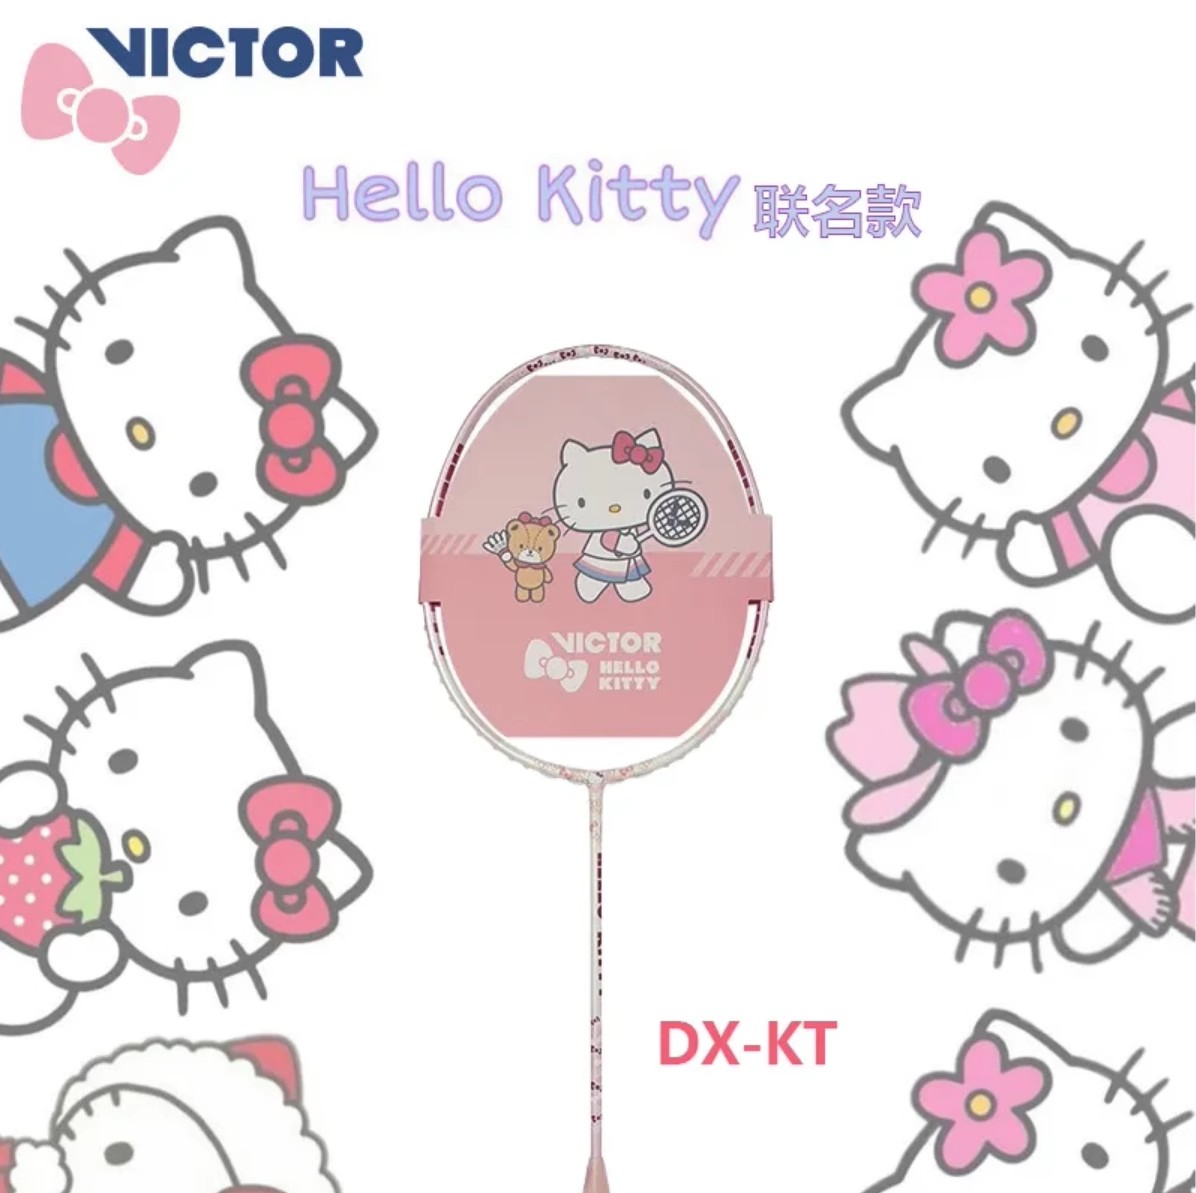 正品VICTOR胜利哈喽KT联名羽毛球拍Hello Kitty凯蒂猫威克多DX-KT